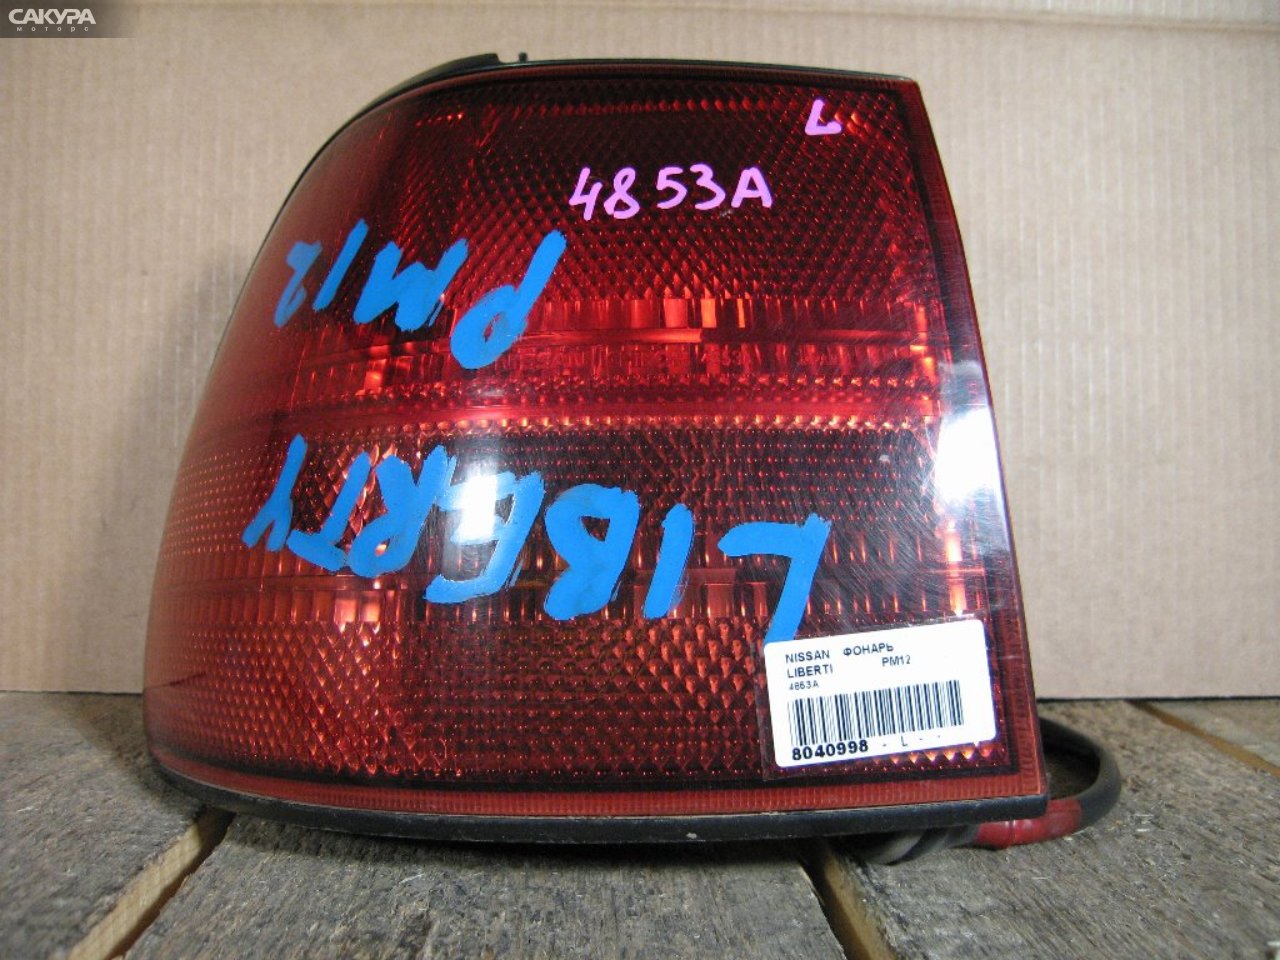 Фонарь стоп-сигнала левый Nissan Liberty PM12 4853A: купить в Сакура Абакан.